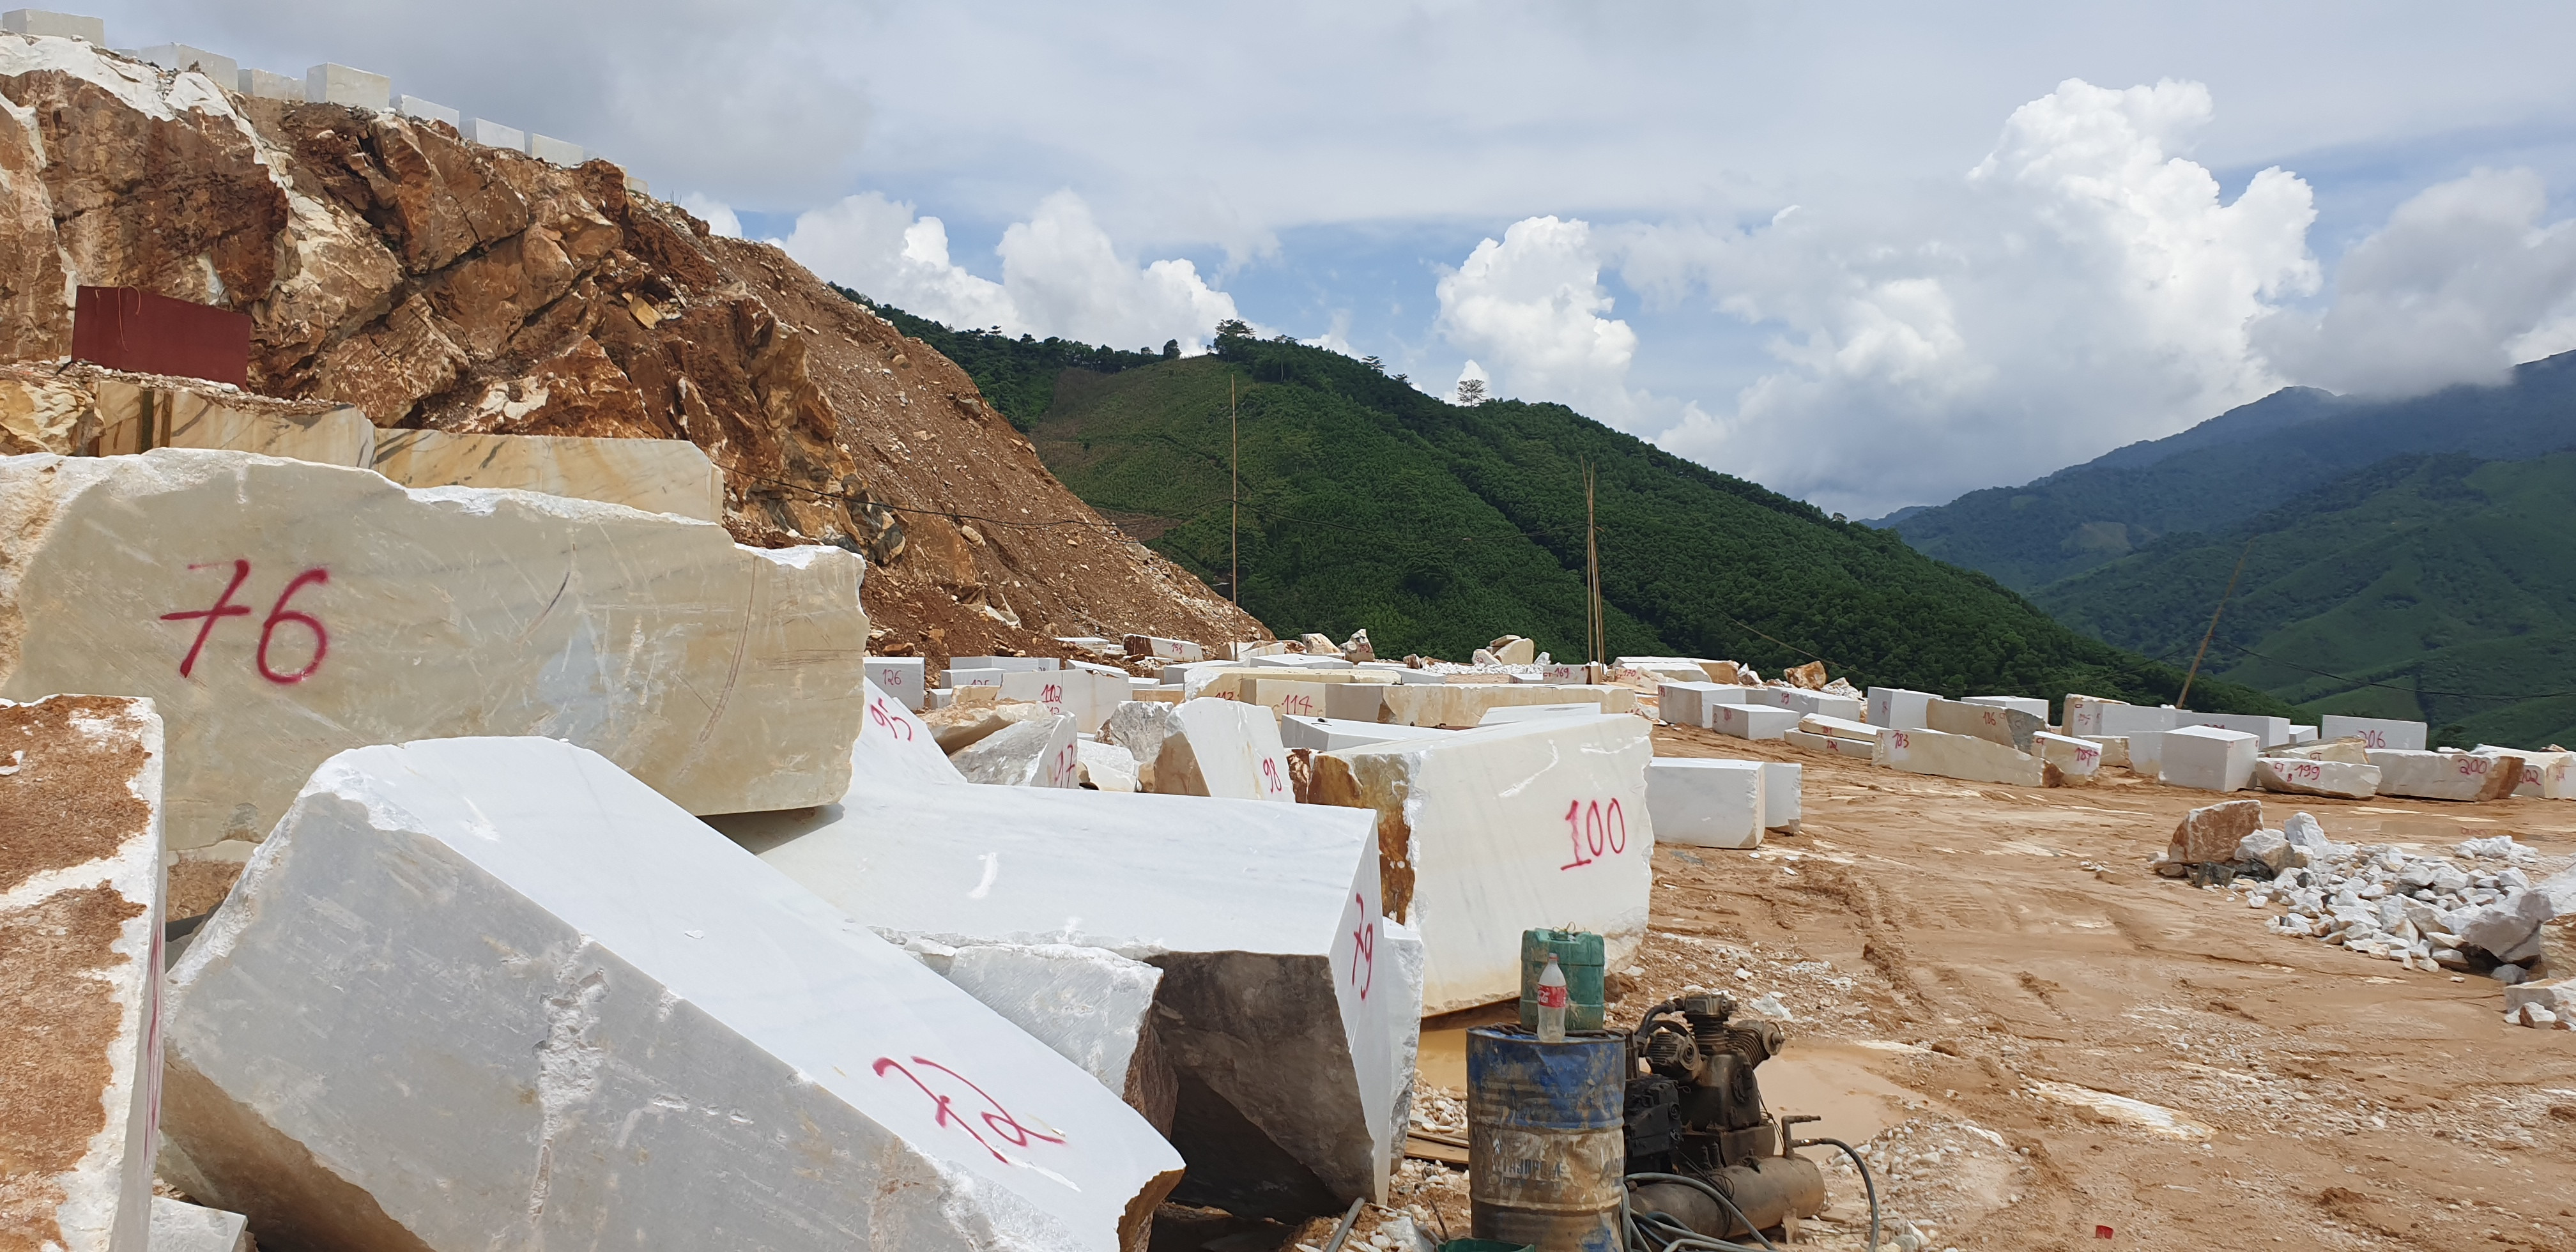 Khoáng sản đá trắng khai thác trái phép trên núi Phá Cụm, xã Châu Lộc bị Công an tỉnh bắt quả tang  dịp tháng 7/2021. Ảnh: NPV